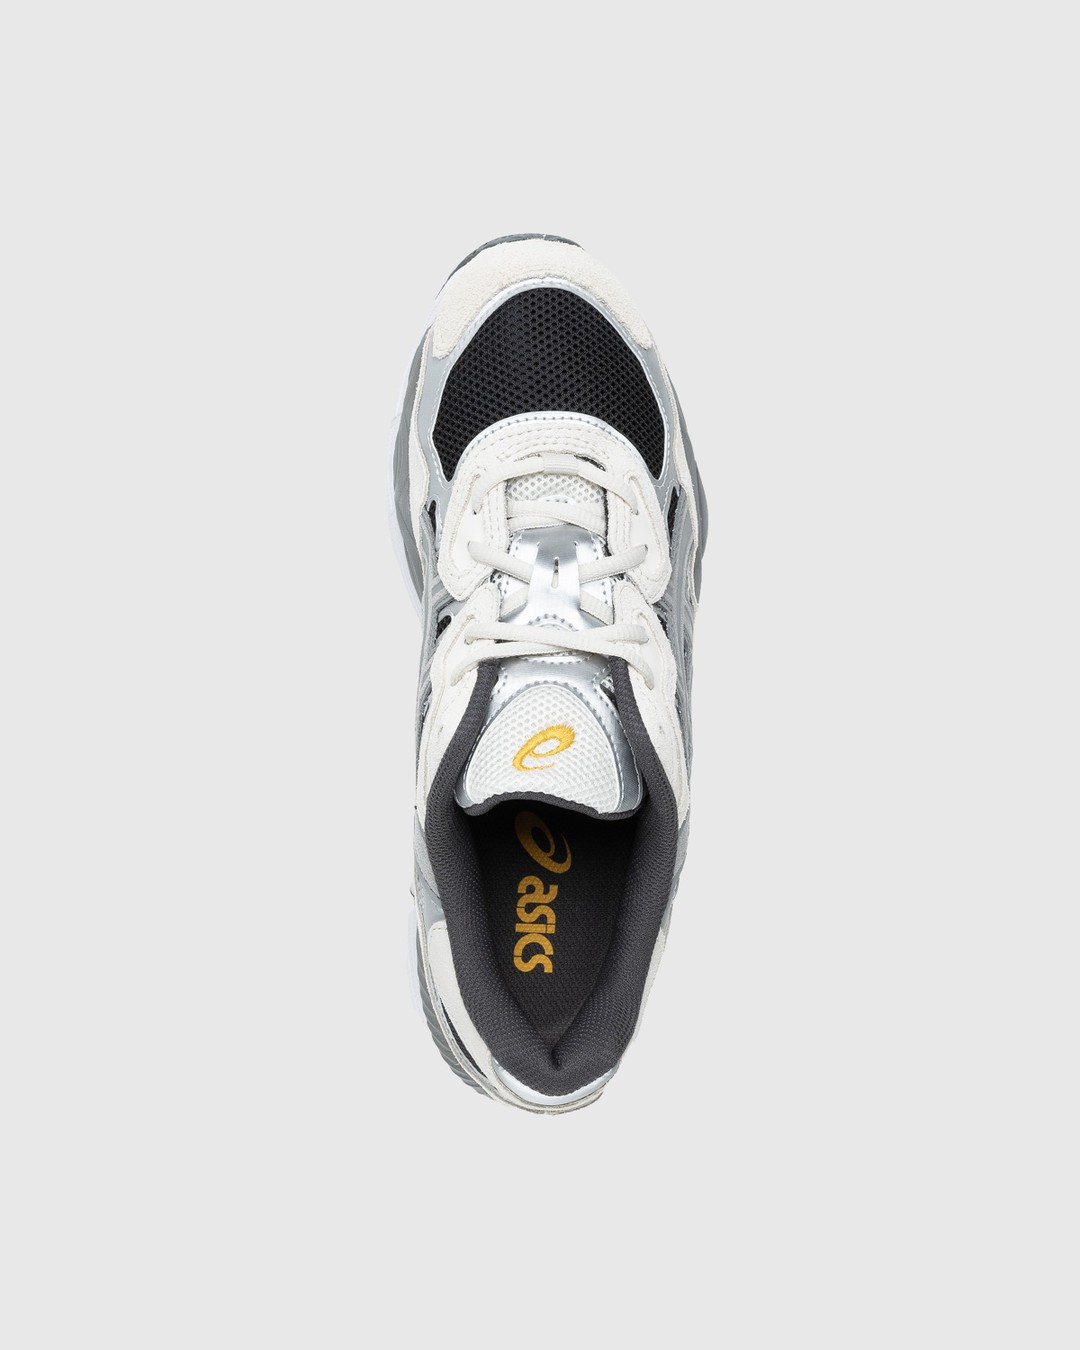 asics – GEL-NYC Black/Clay Grey - Sneakers - Grey - Image 5